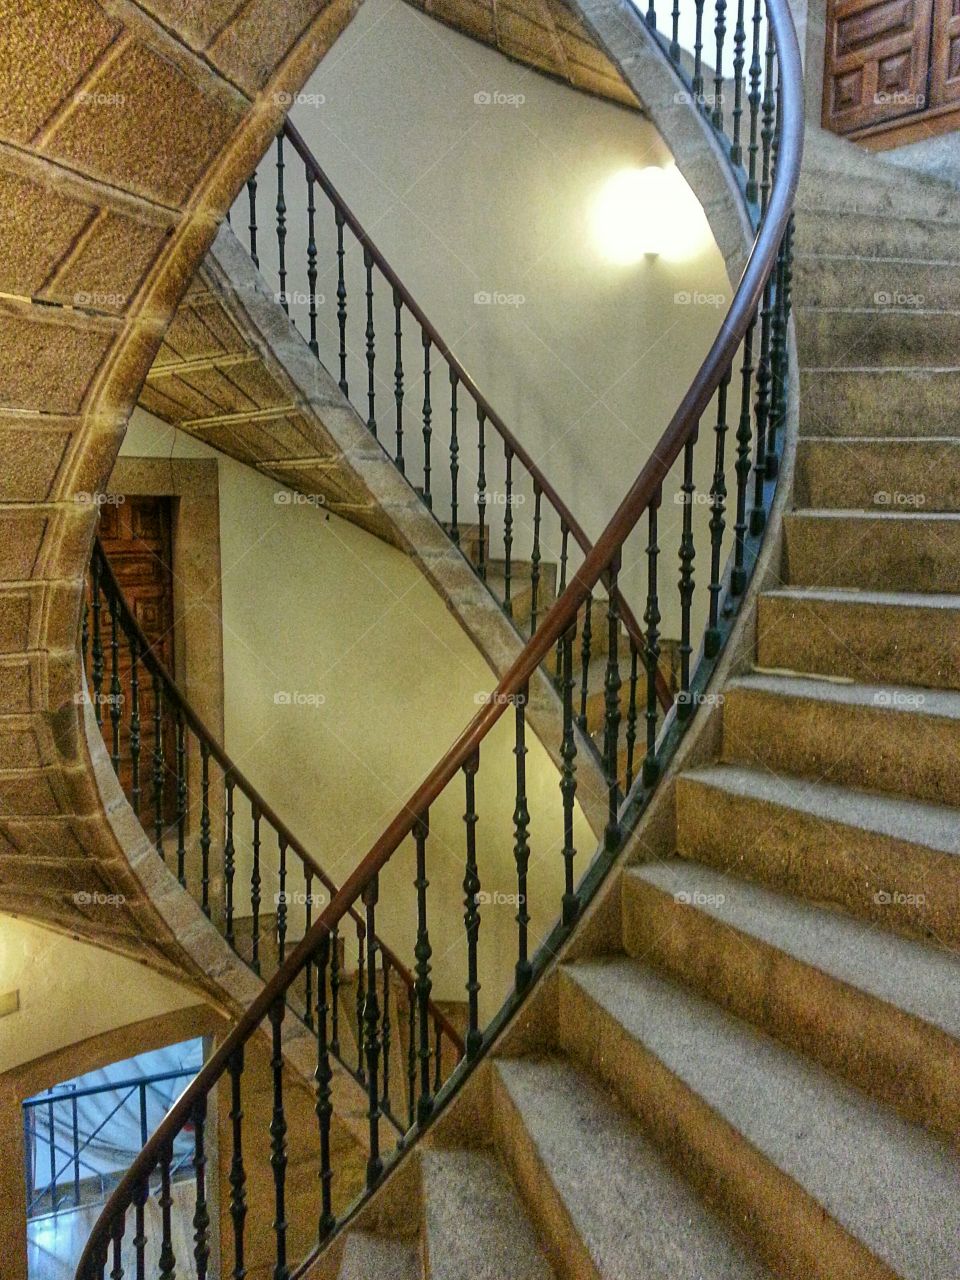 Triple Spiral Staircase, Museum of Galician People. Triple spiral staircase, Museum of Galician People, Santiago de Compostela